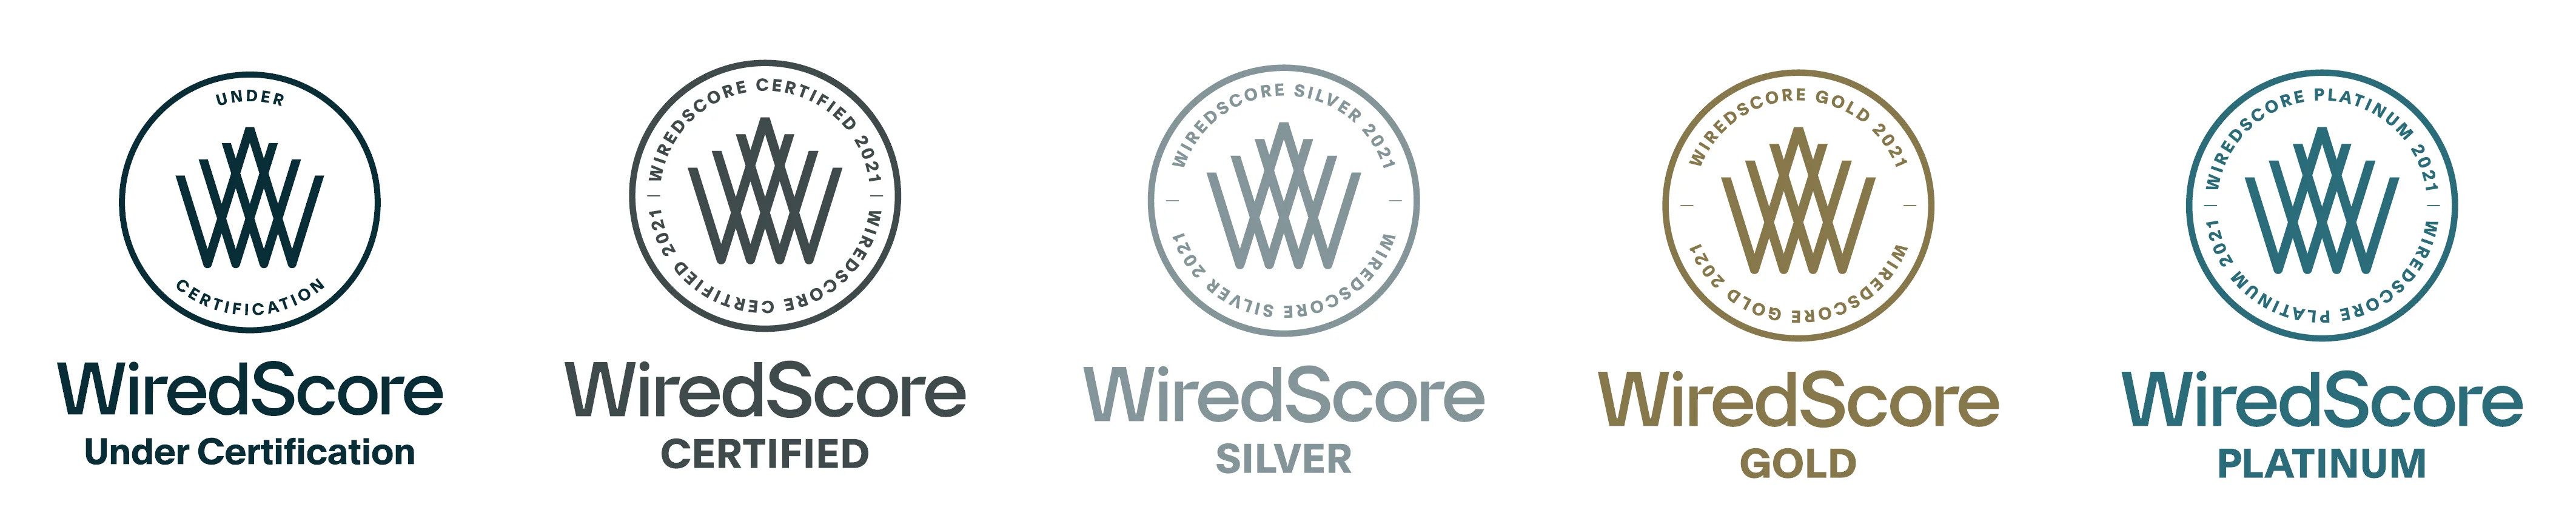 WiredScore 